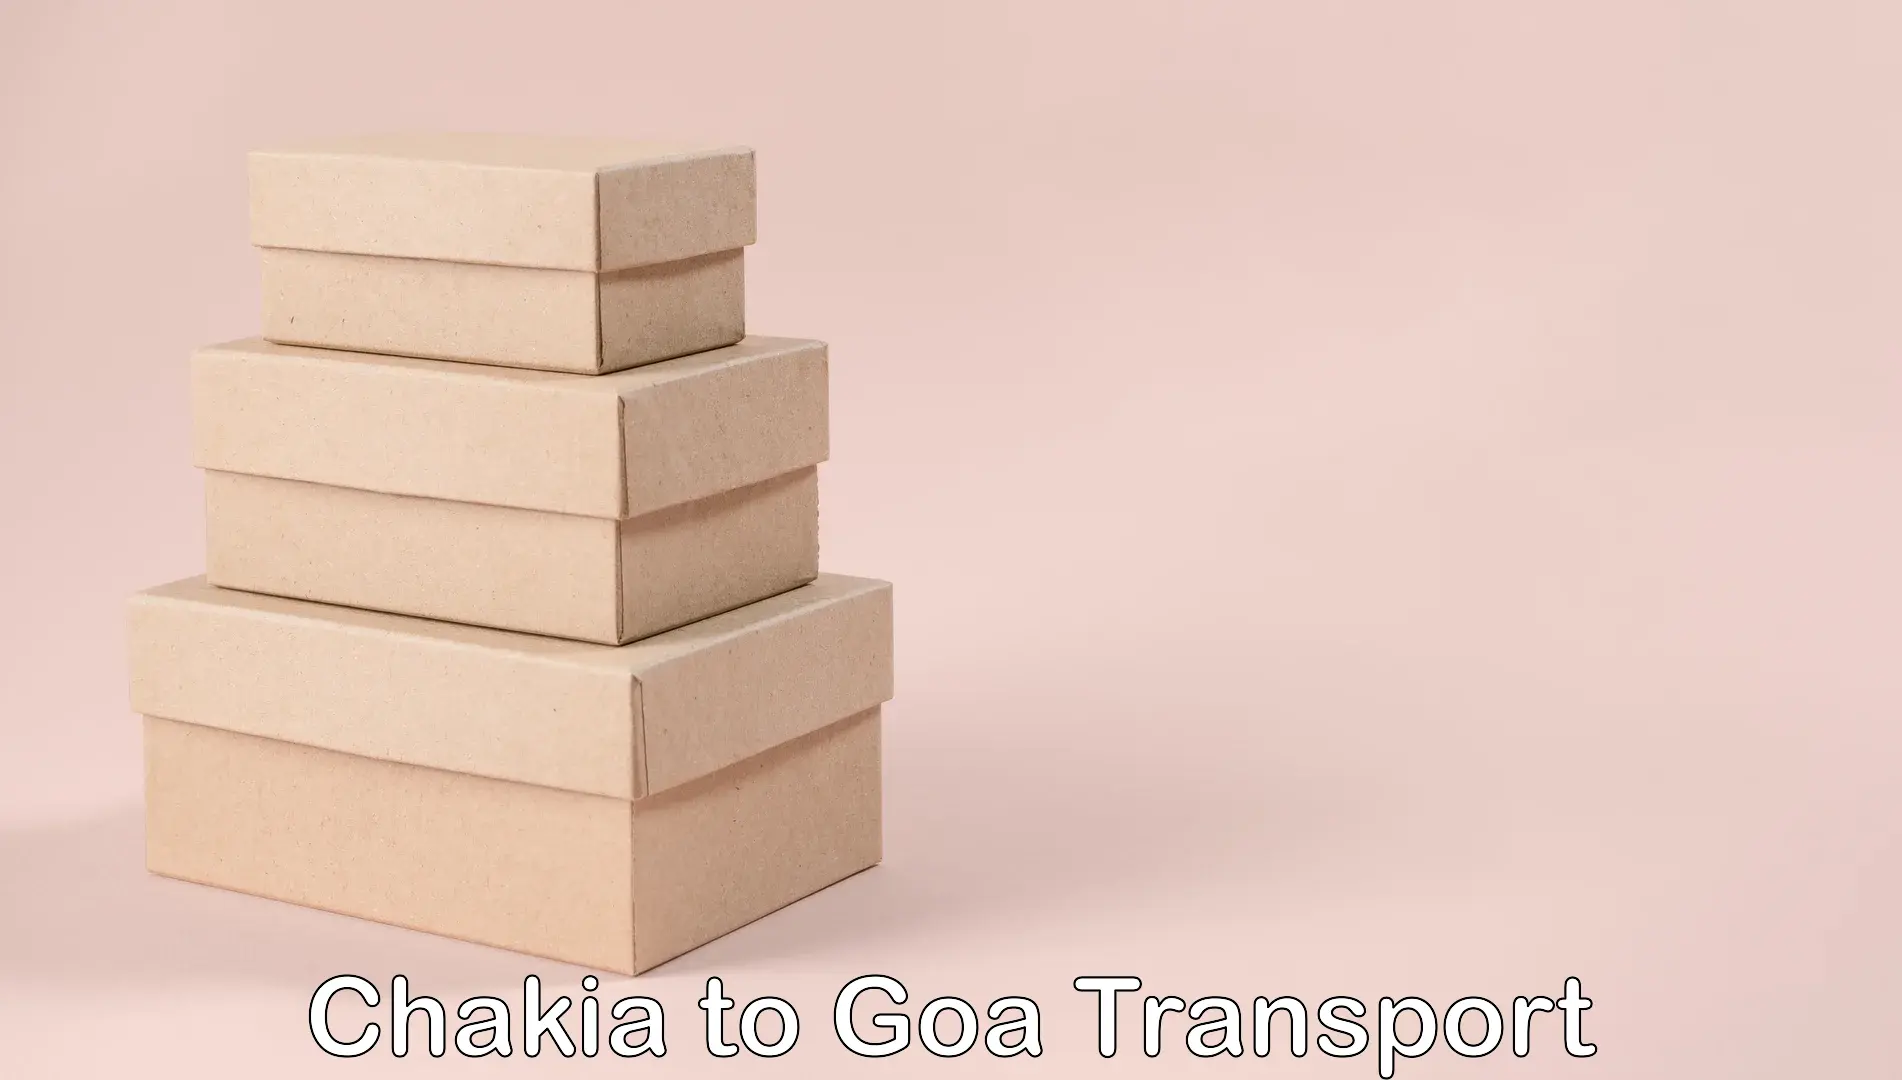 Transport services Chakia to Goa University